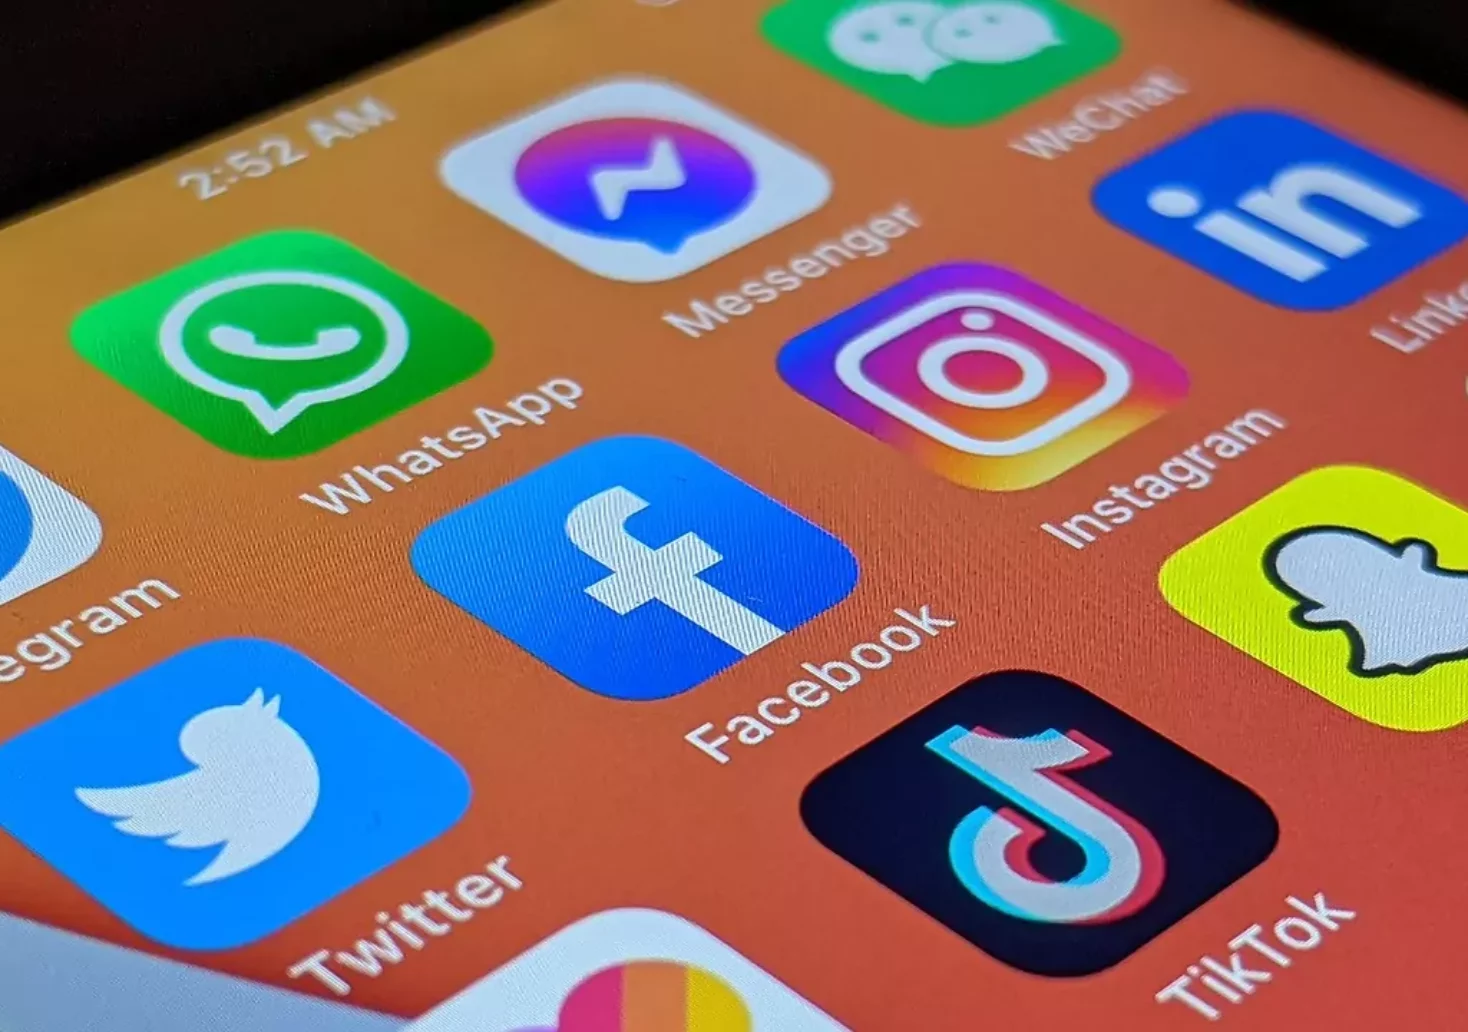 Neues Abo: Diese User müssen bald für Facebook und Instagram bezahlen